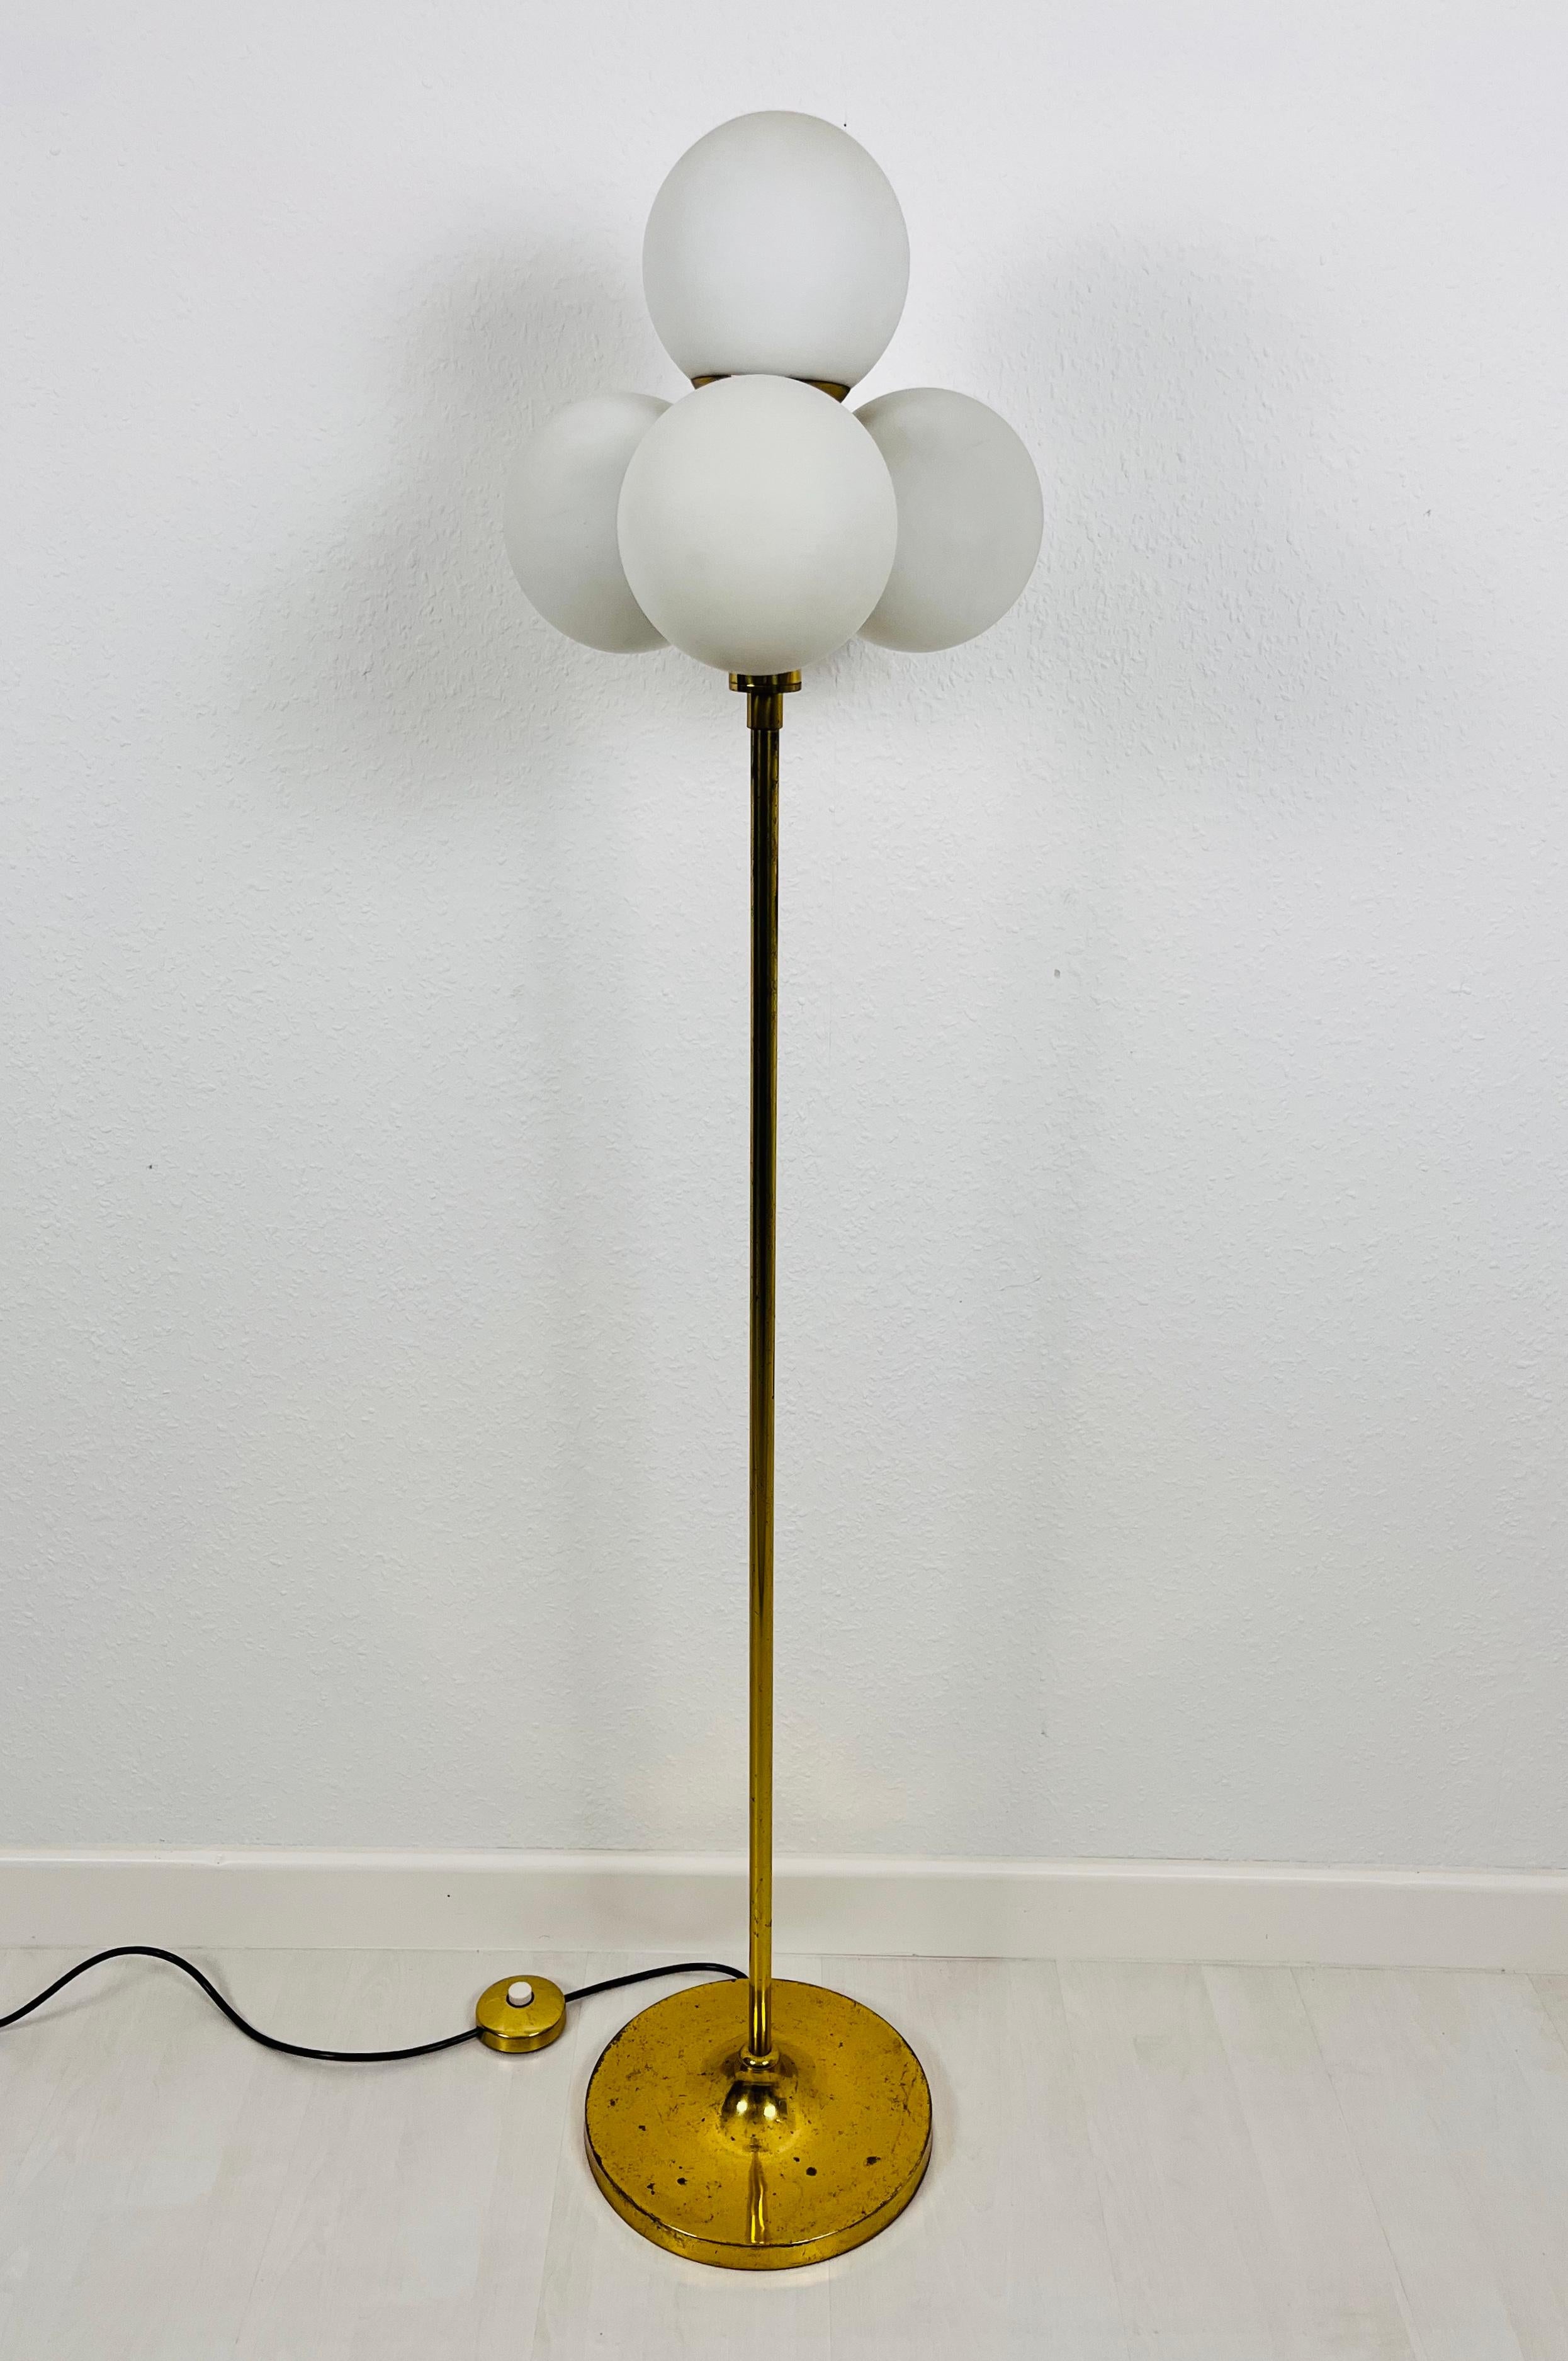 Un lampadaire du milieu du siècle par Kaiser, fabriqué en Allemagne dans les années 1960. Il est fascinant avec son design datant de l'ère spatiale et ses quatre boules opaques. Le fond de la lampe est en laiton massif. Le bar est également en